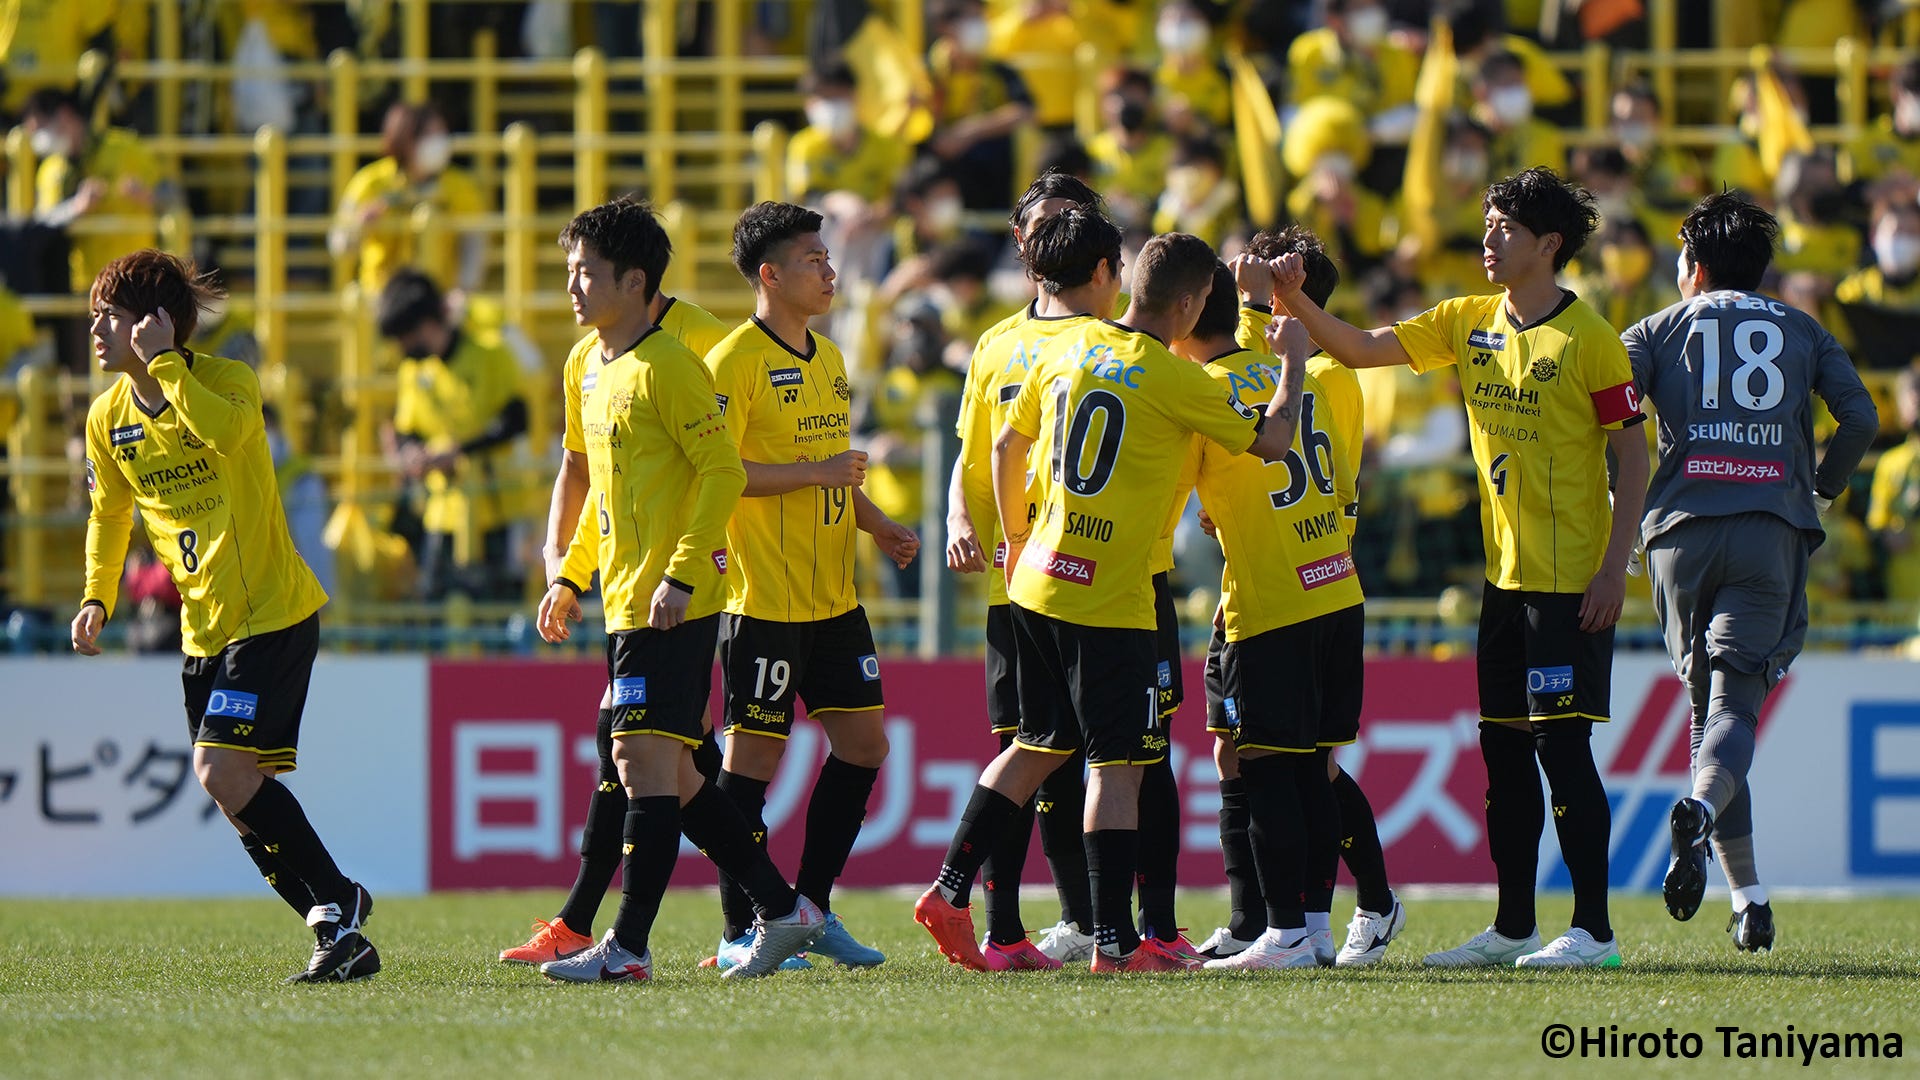 横浜f マリノス 柏レイソルに逆転負けで今季初黒星 Jリーグ Goal Com 日本